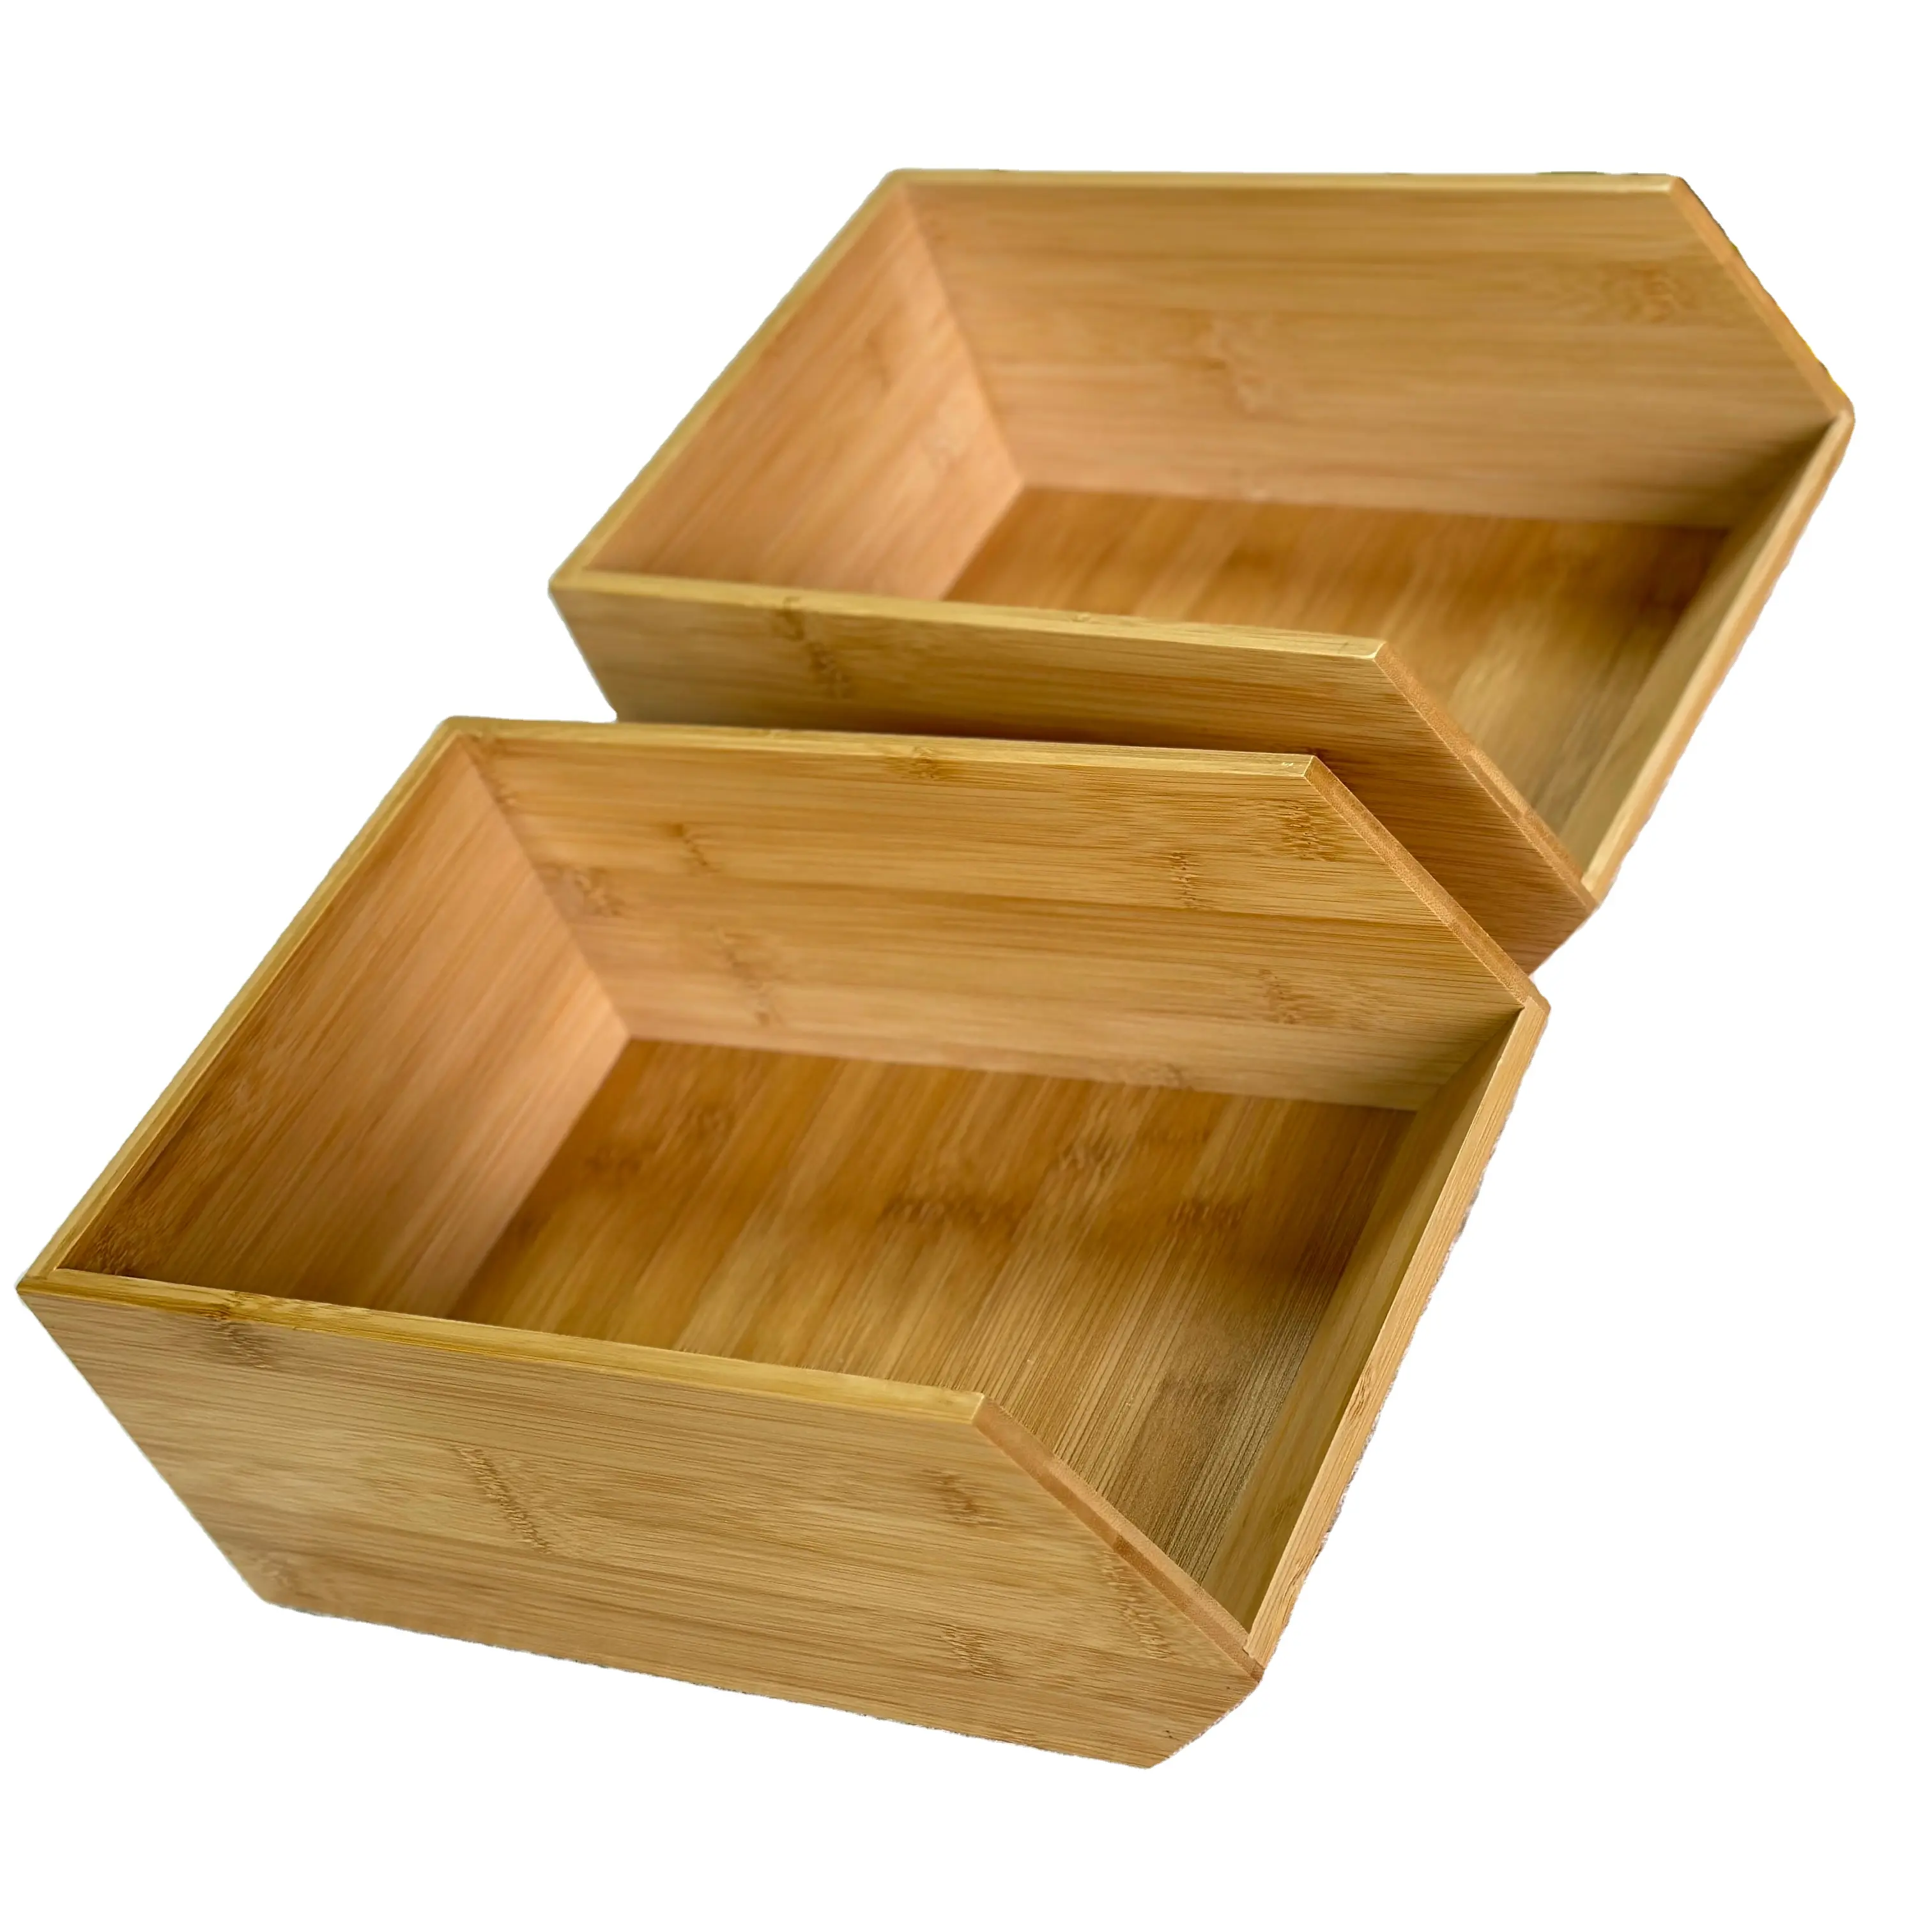 Bamboo kitchen desktop organizer cassetto desktop articoli vari scatole portaoggetti impilabili con apertura frontale